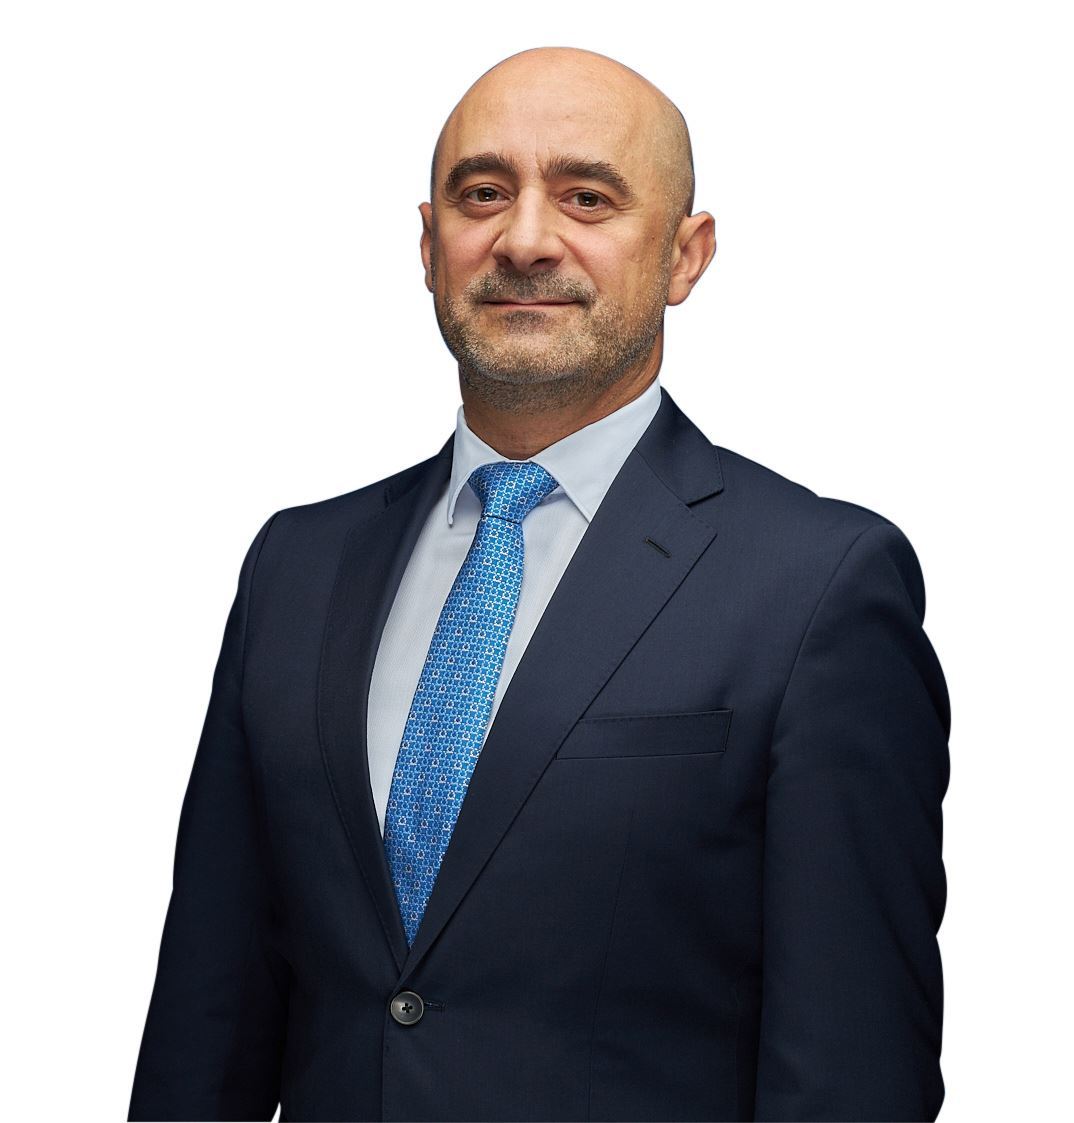 السيد/ مازن عصام حوّا، نائب رئيس مجلس الإدارة والرئيس التنفيذي للمجموعة في شركة العقارات المتحدة